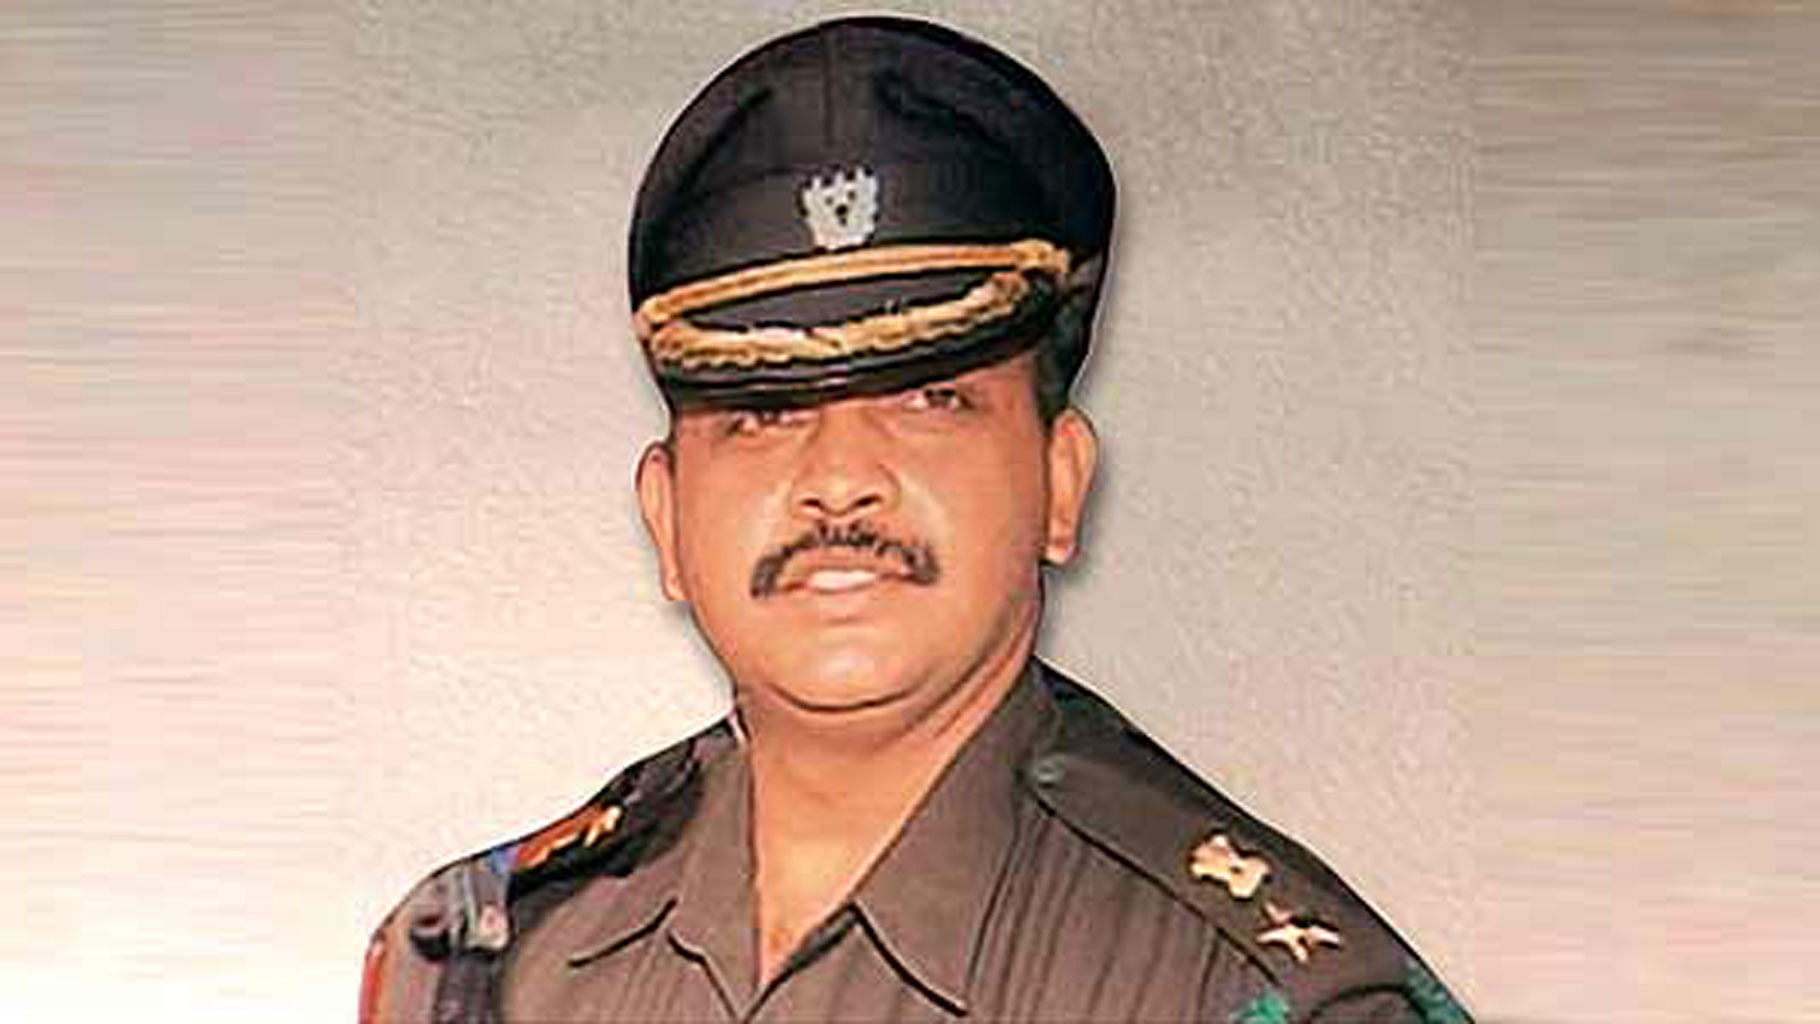 Shrikant Lt Col Purohit. 